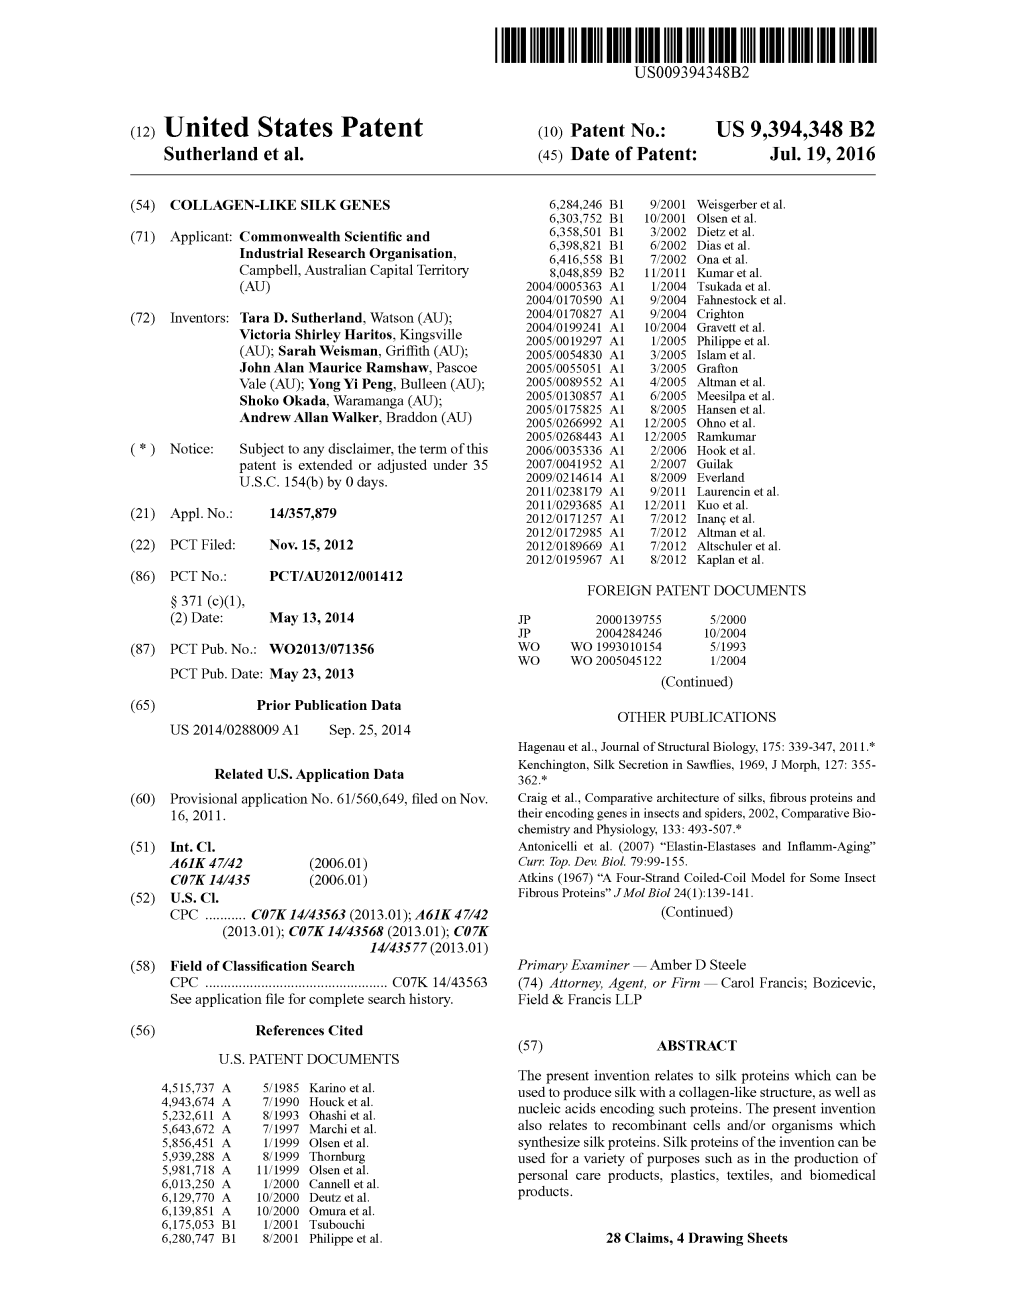 (12) United States Patent (10) Patent No.: US 9,394,348 B2 Sutherland Et Al